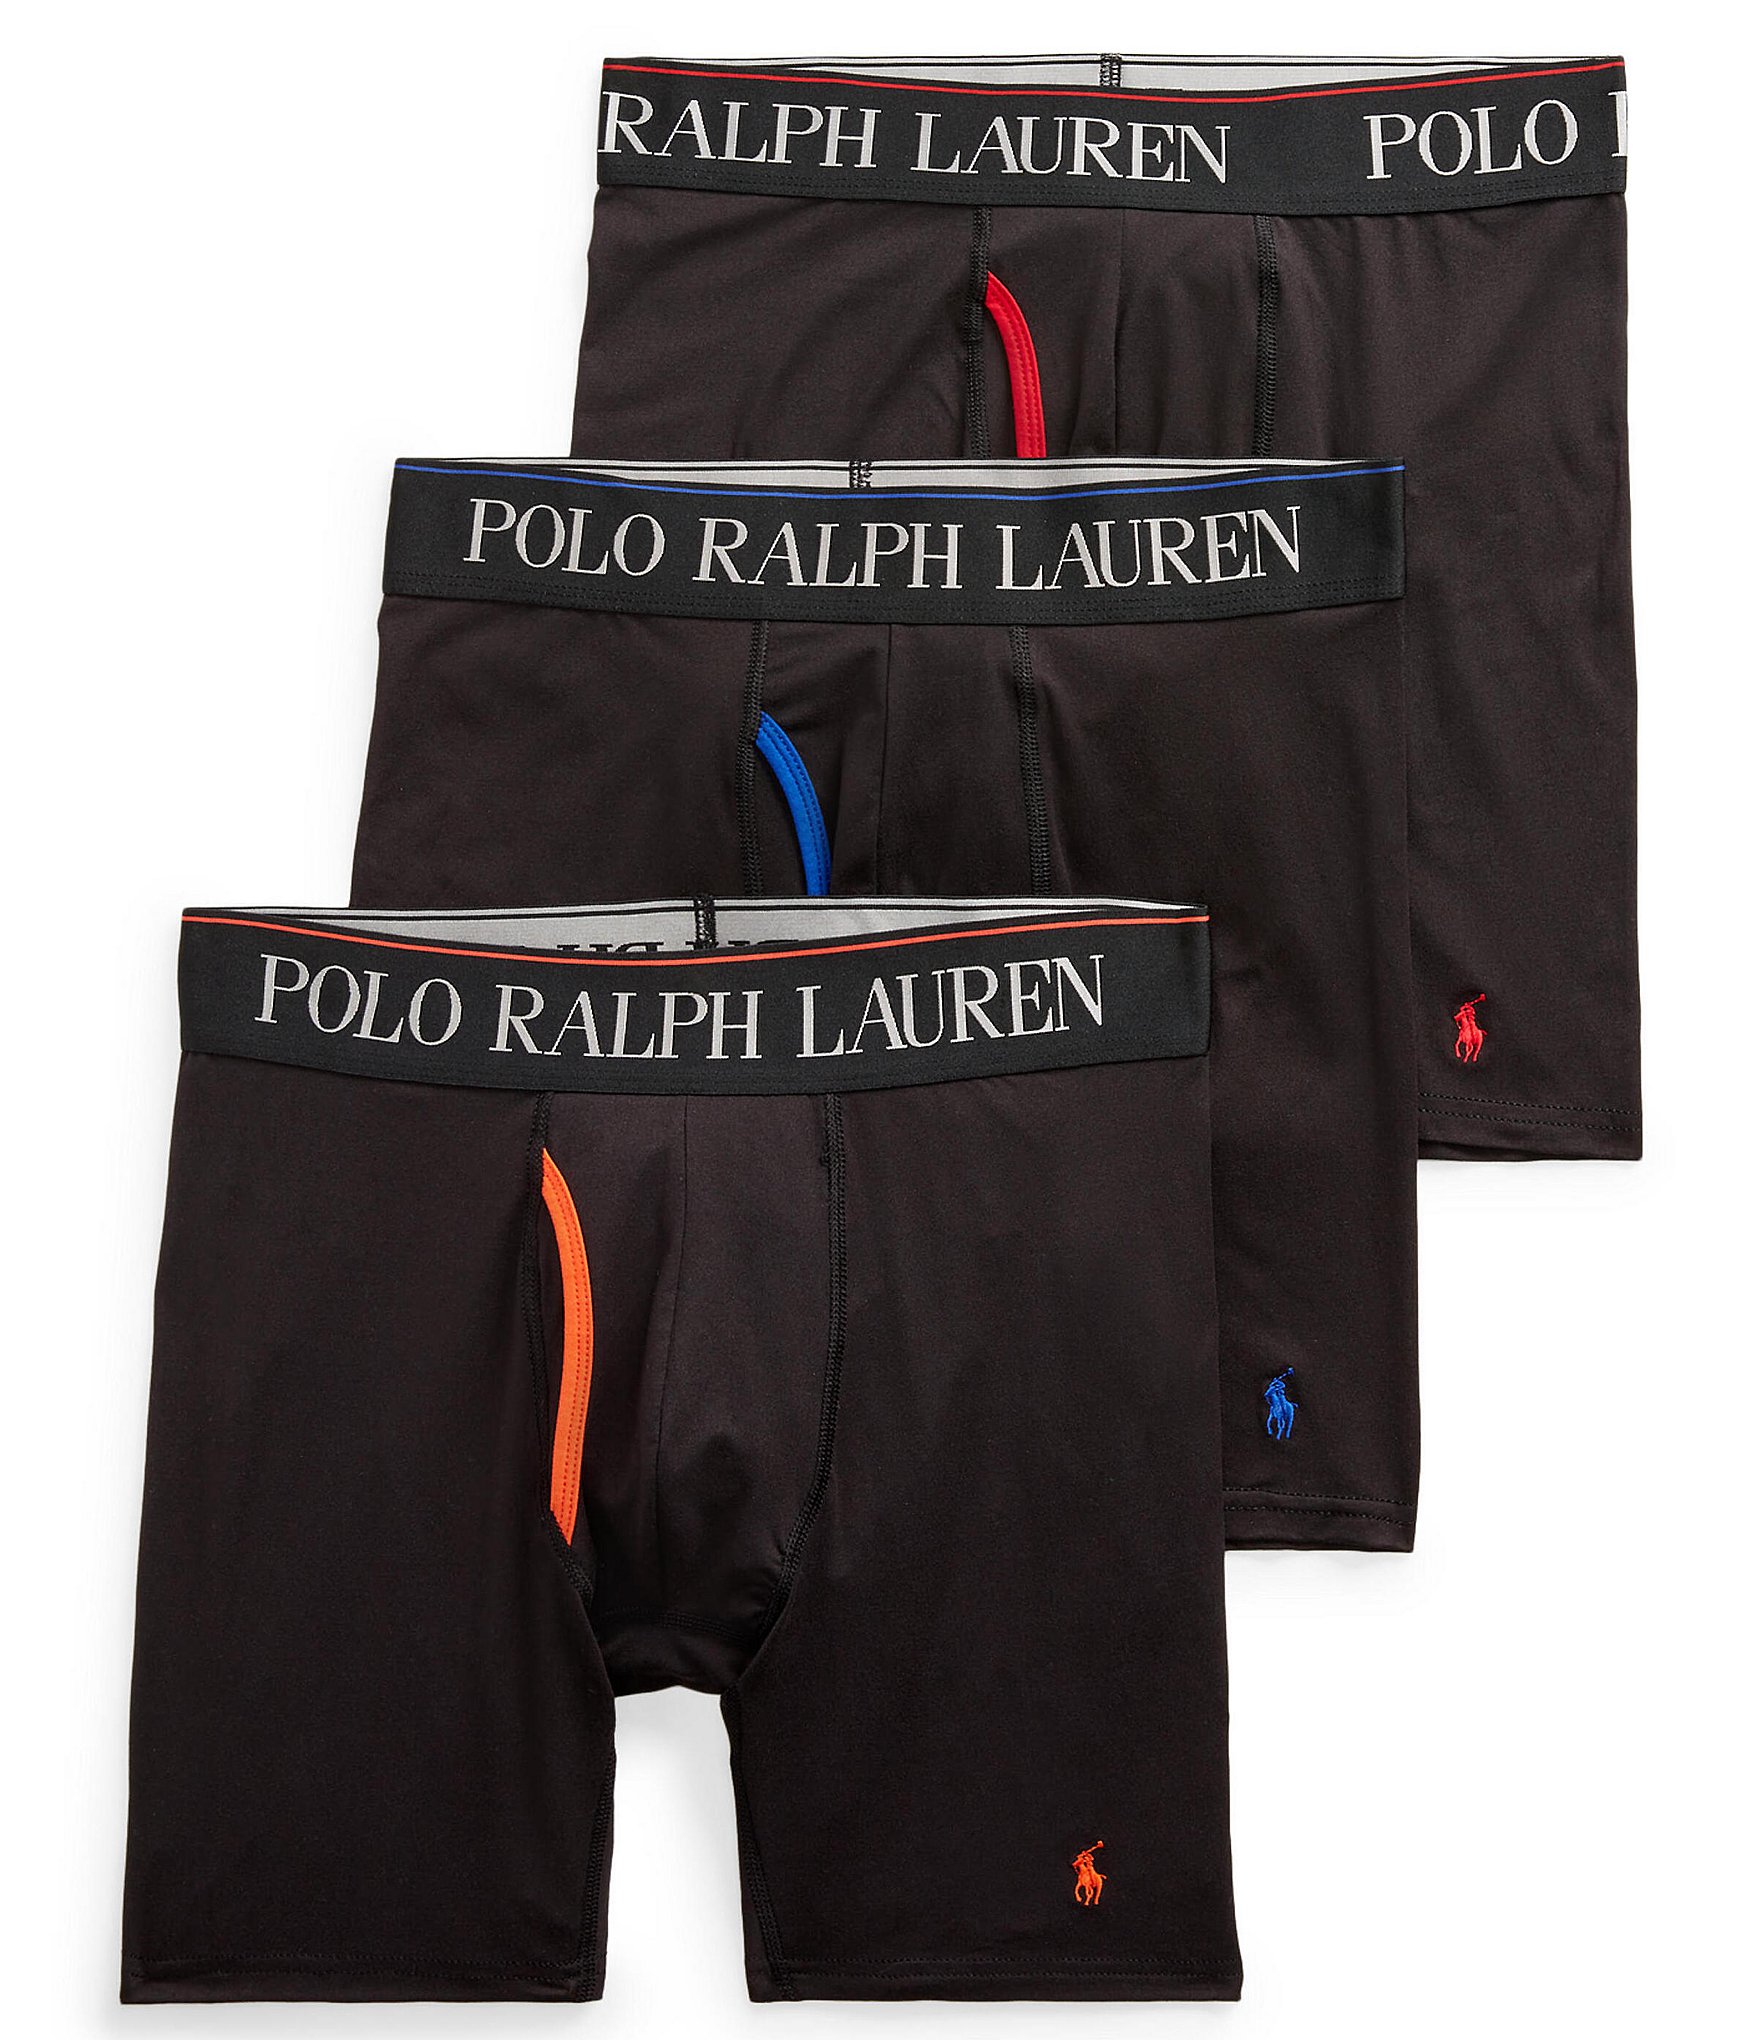 Polo Ralph Lauren 4D Flex Cooling Microfiber 6